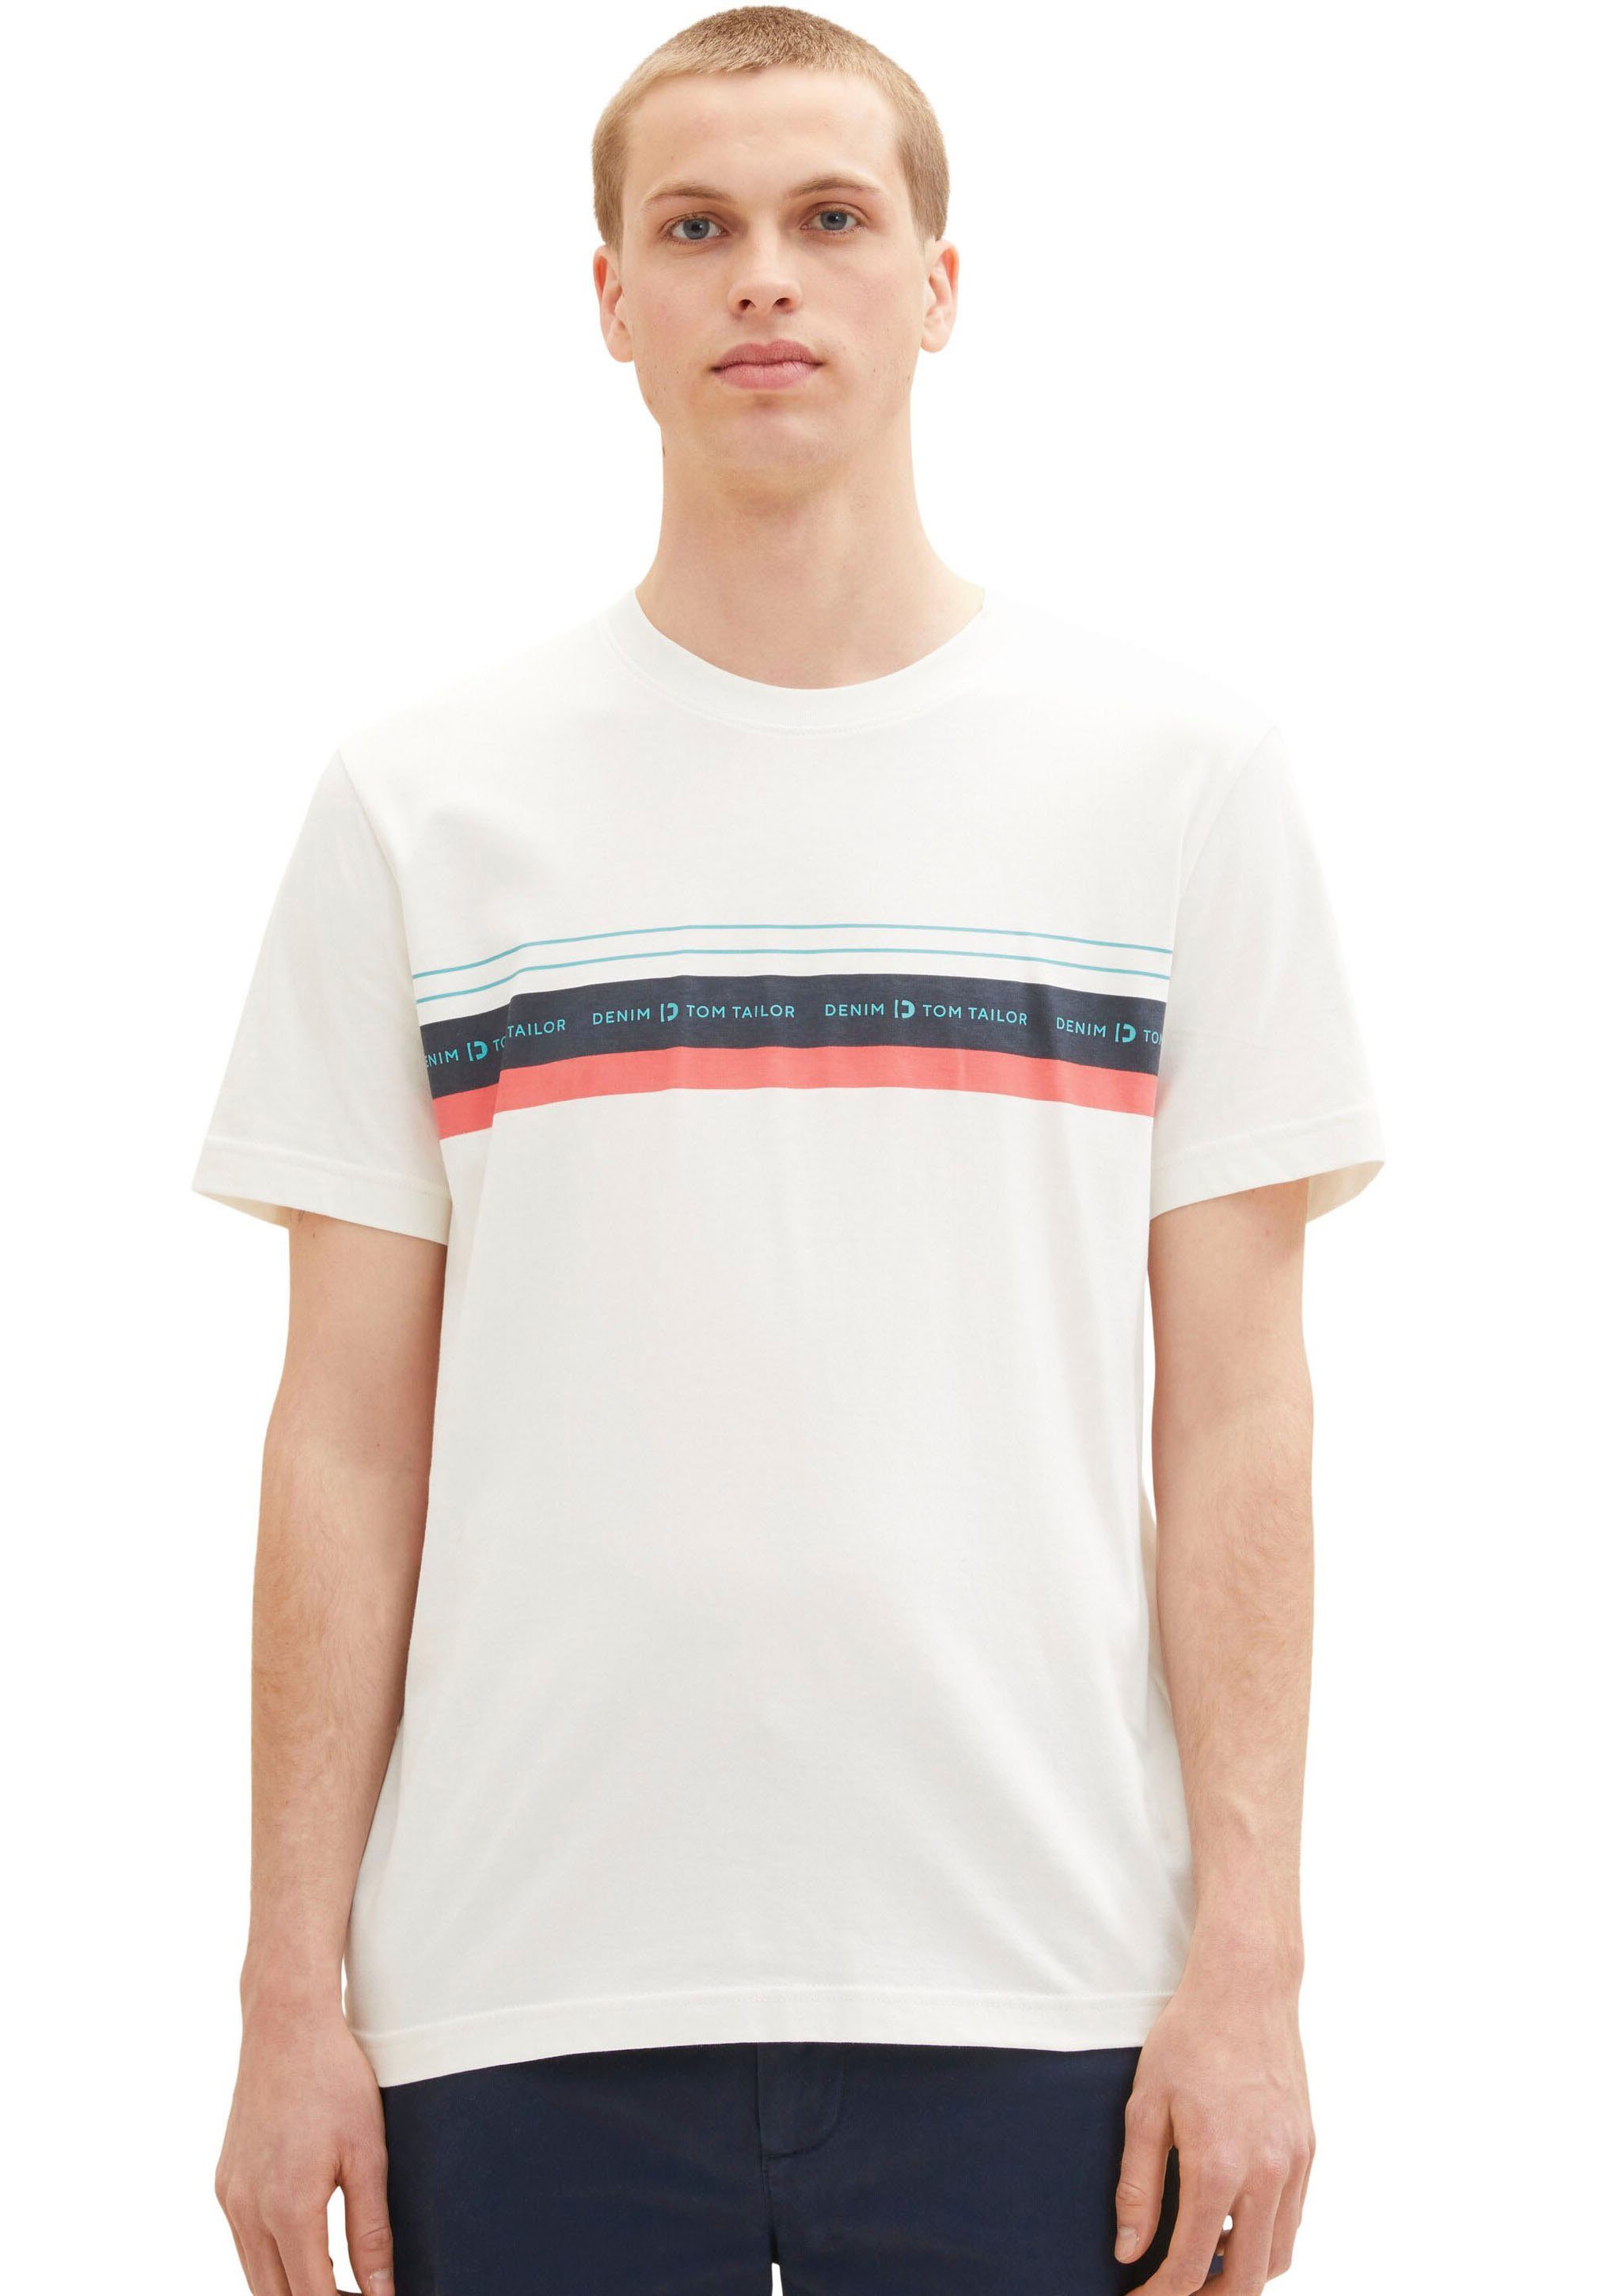 OTTO Tom online Tailor für kaufen Weiße Herren T-Shirts |